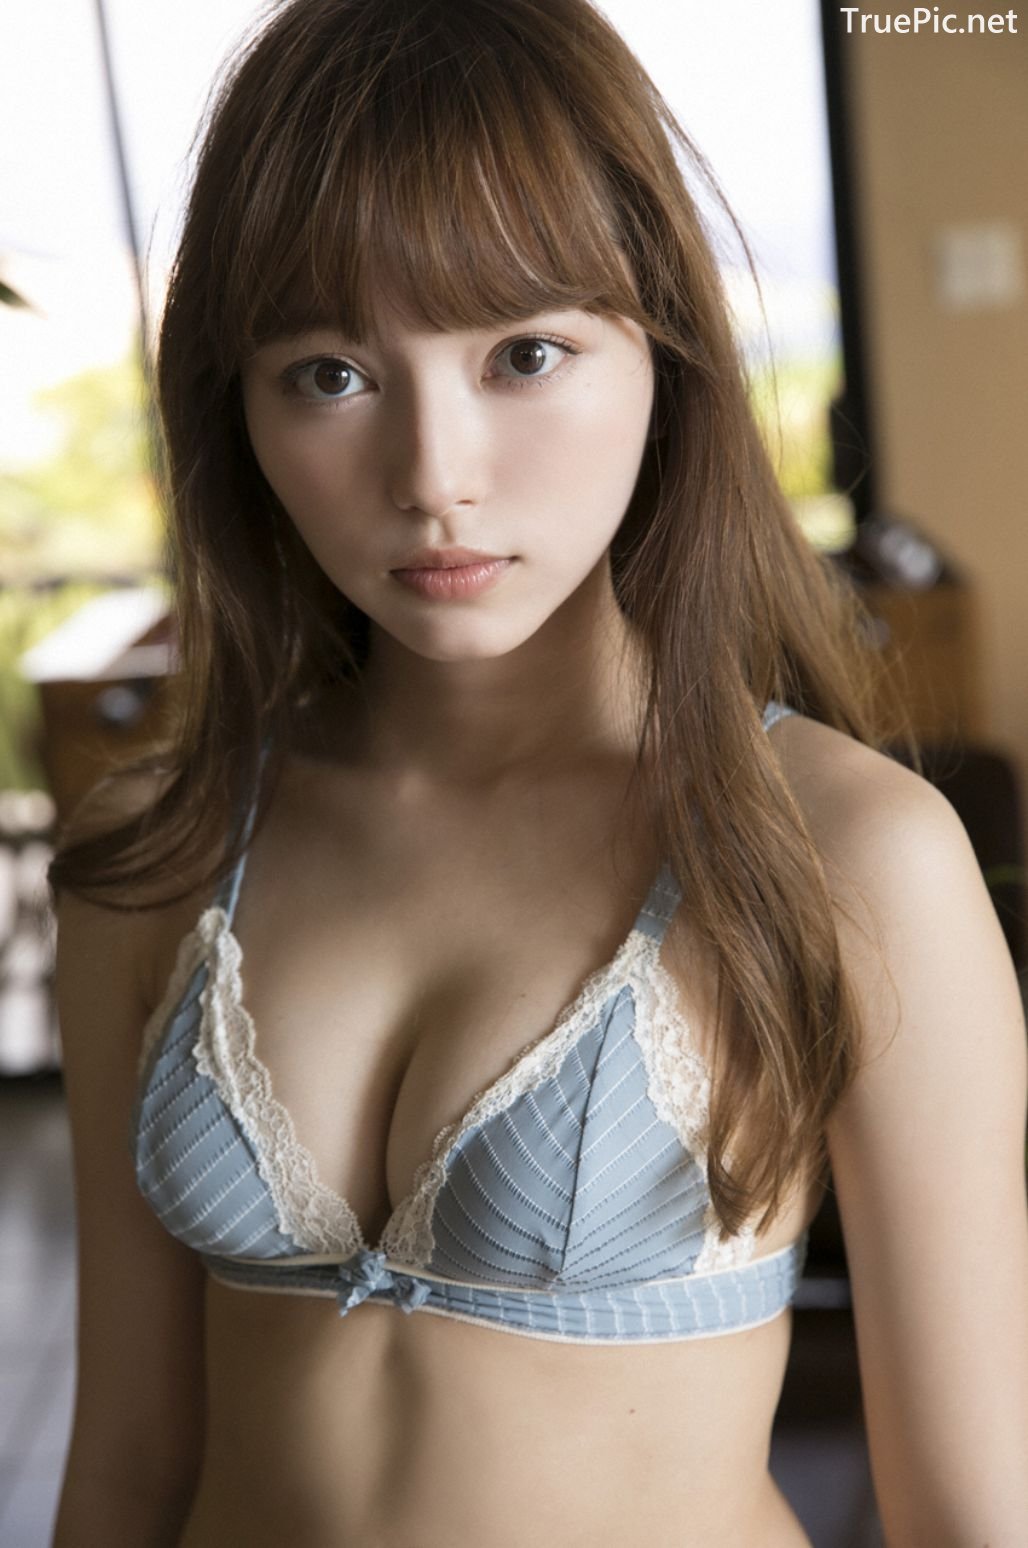 Image-Japanese-Idol-Sayaka-Komuro-Bikini-Show-TruePic.net- Picture-12